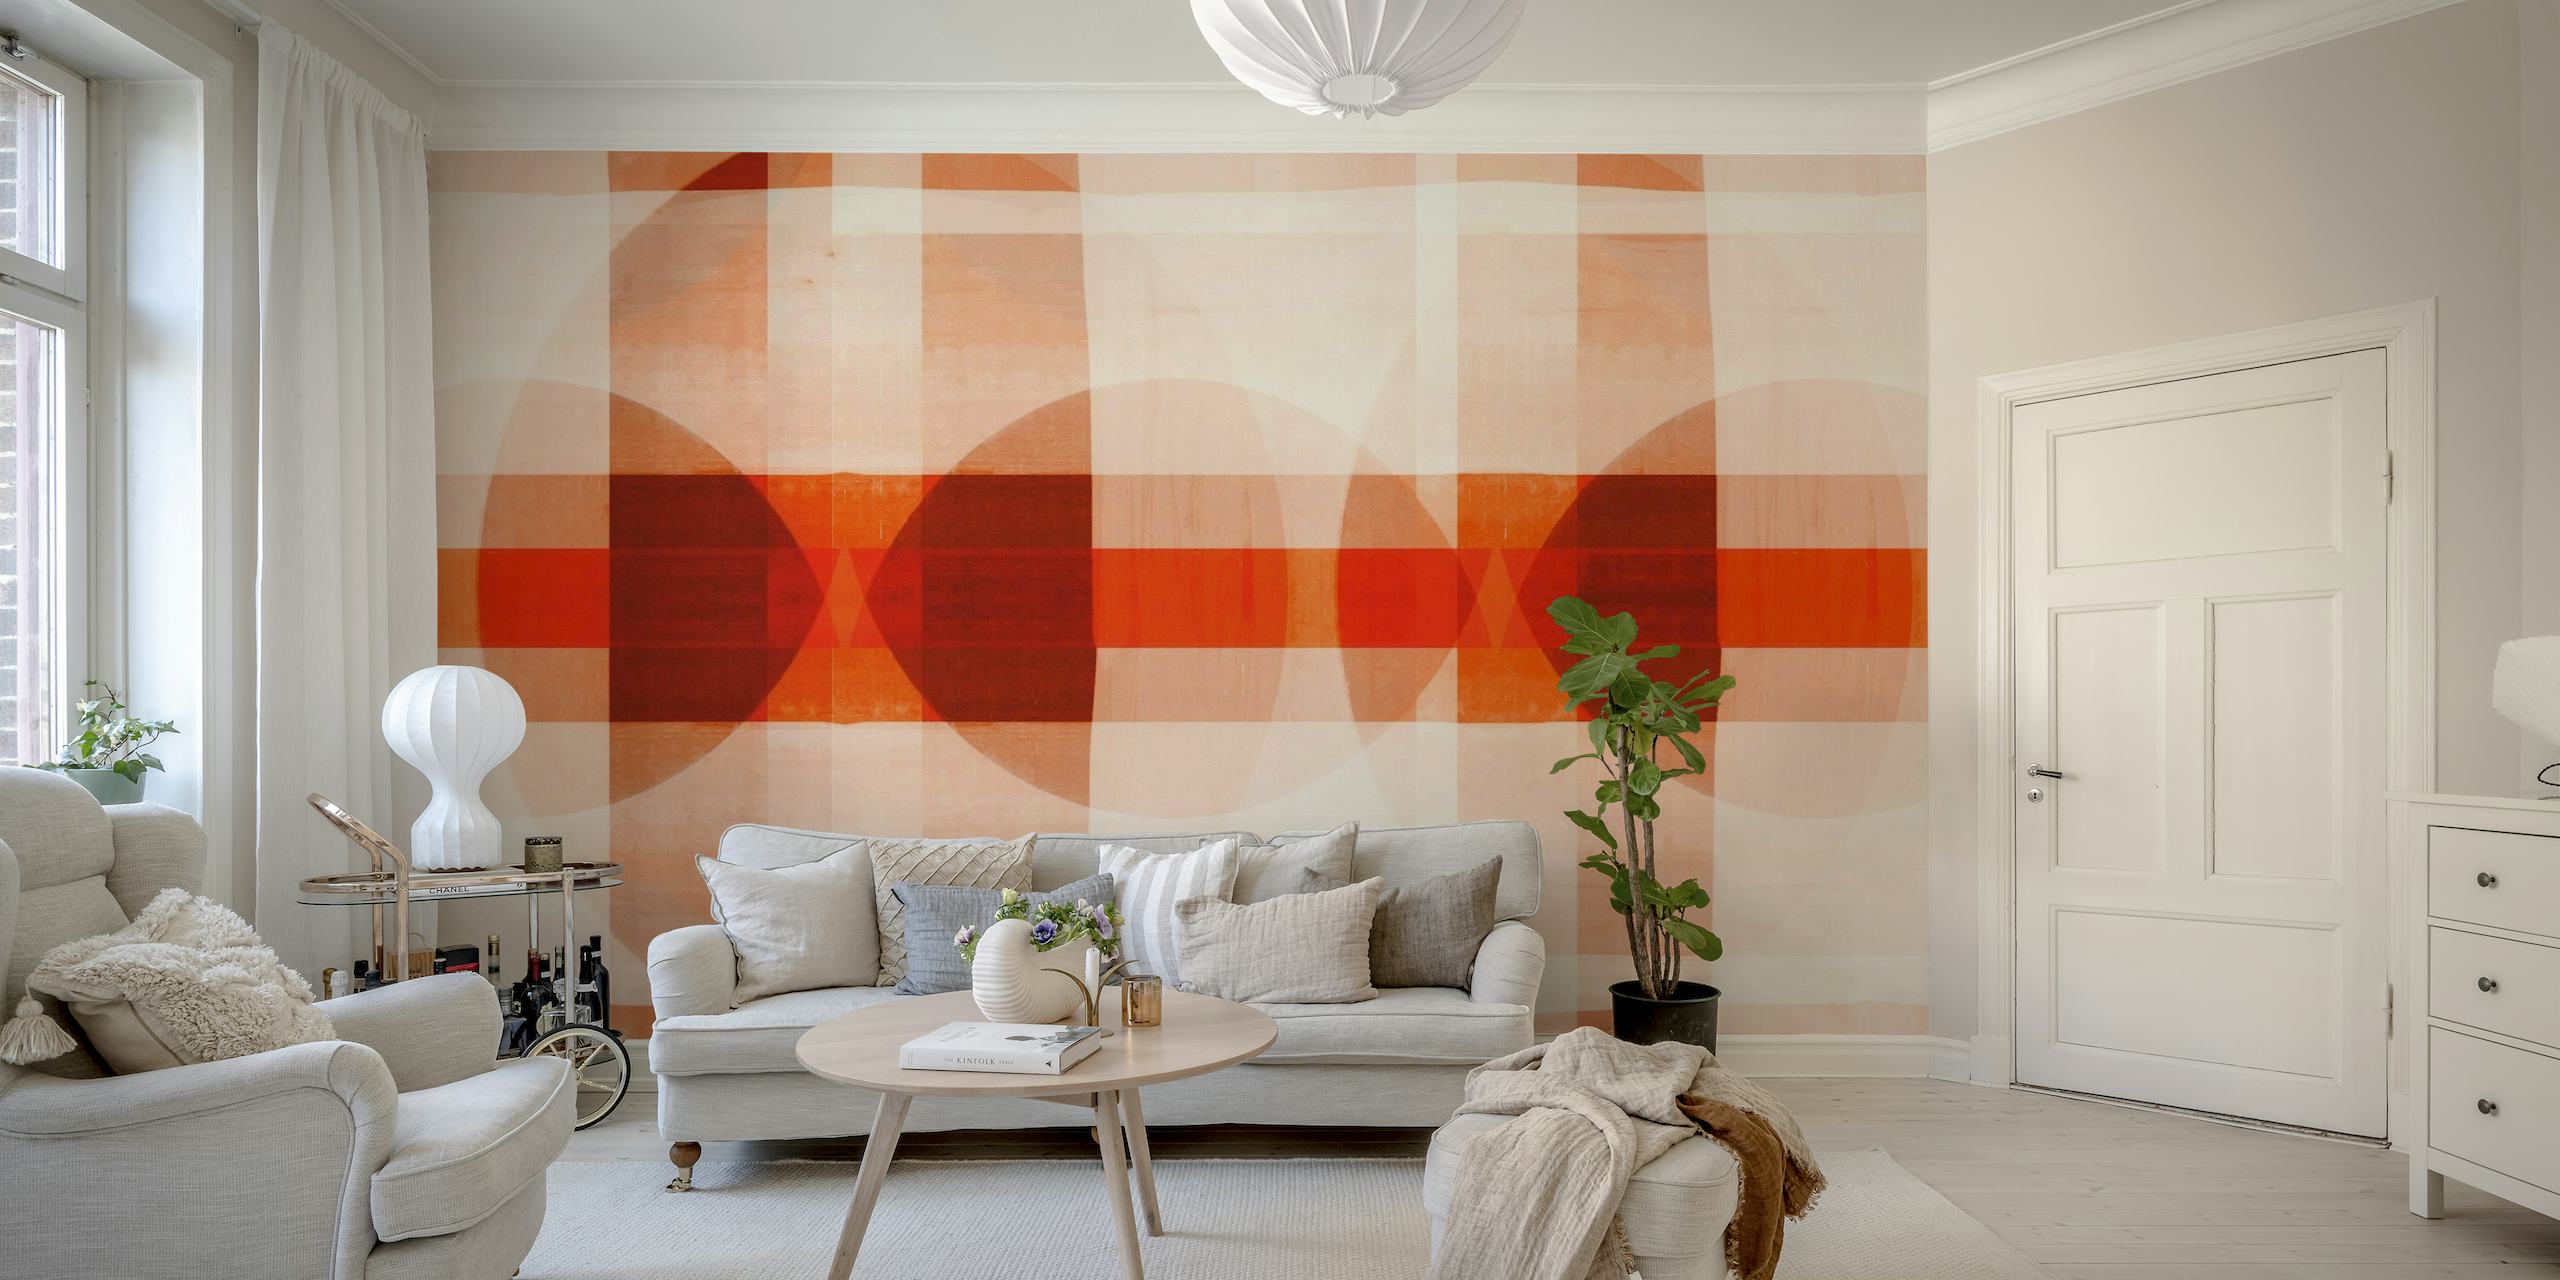 Mural de parede em mosaico inspirado na Bauhaus com padrões geométricos em cores quentes